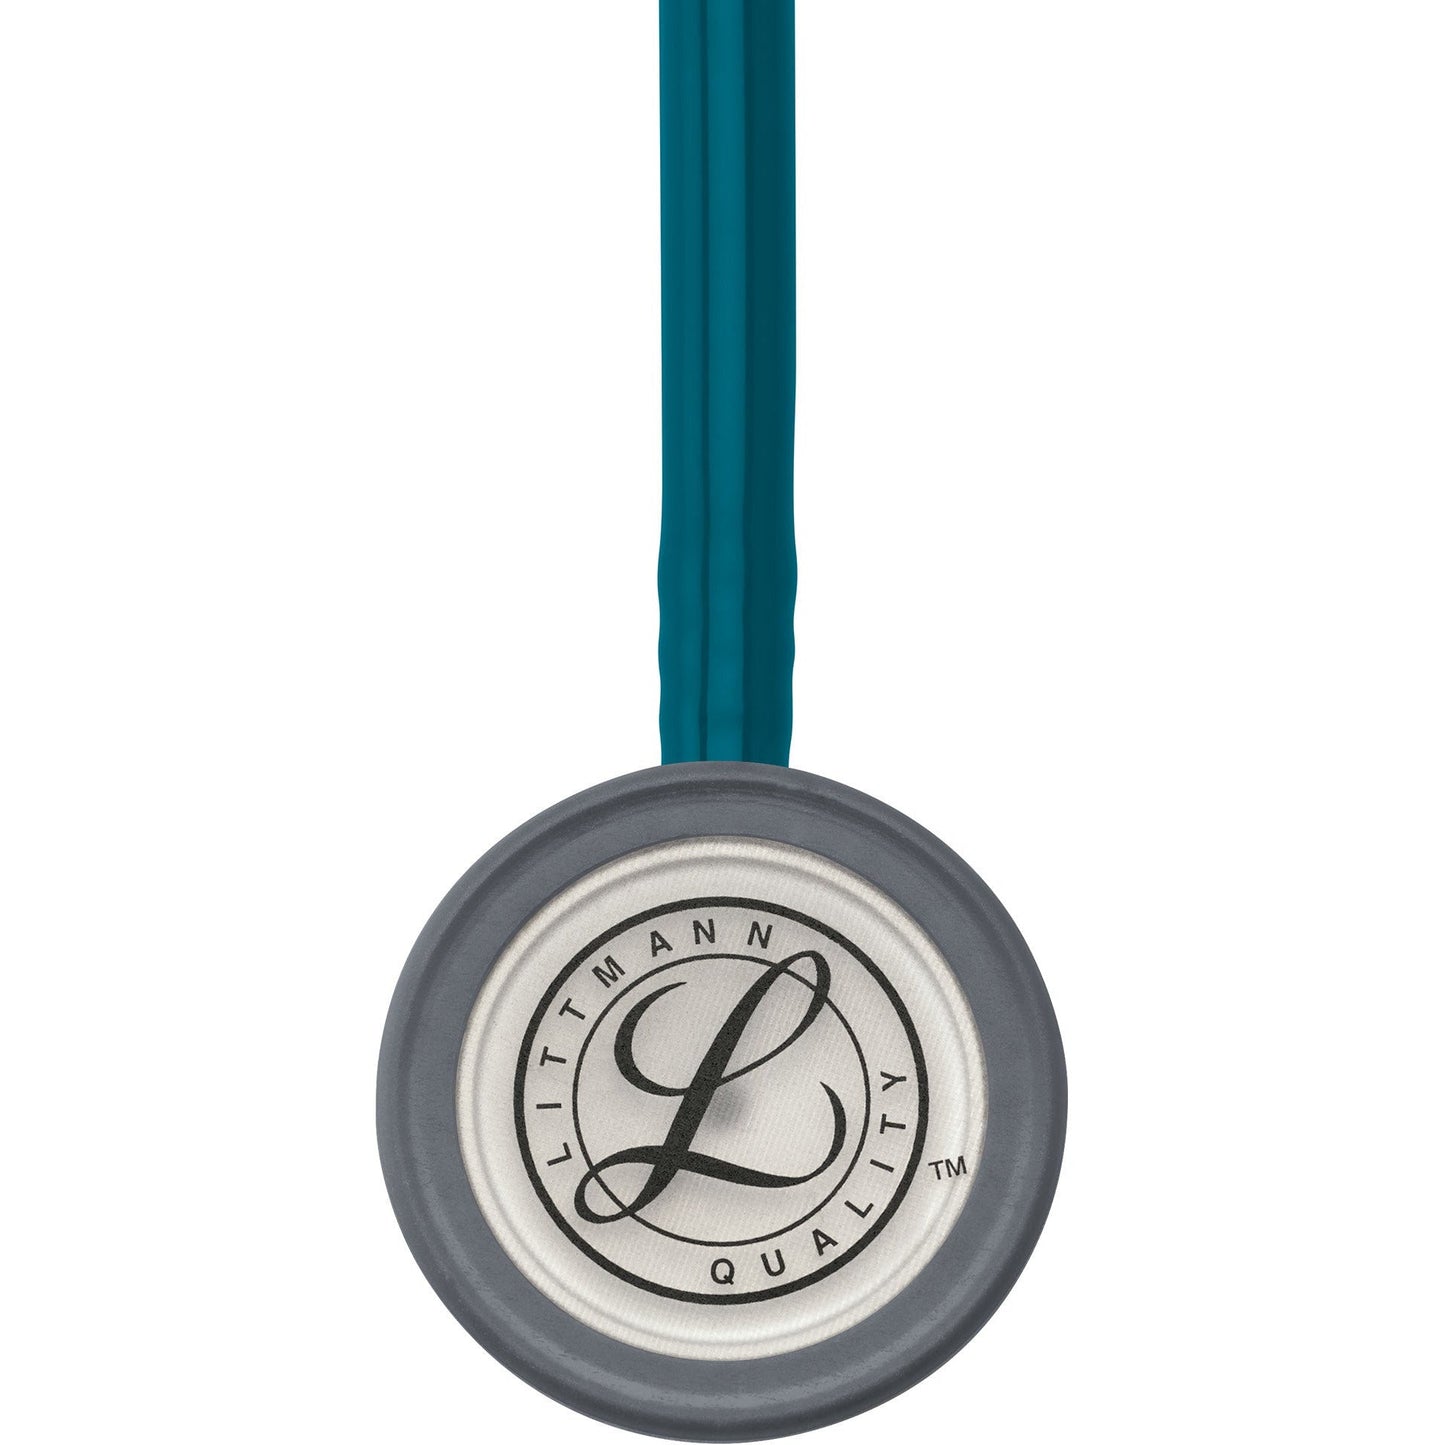 Monitorovací stetoskop Littmann Classic III: Karibská modrá 5623